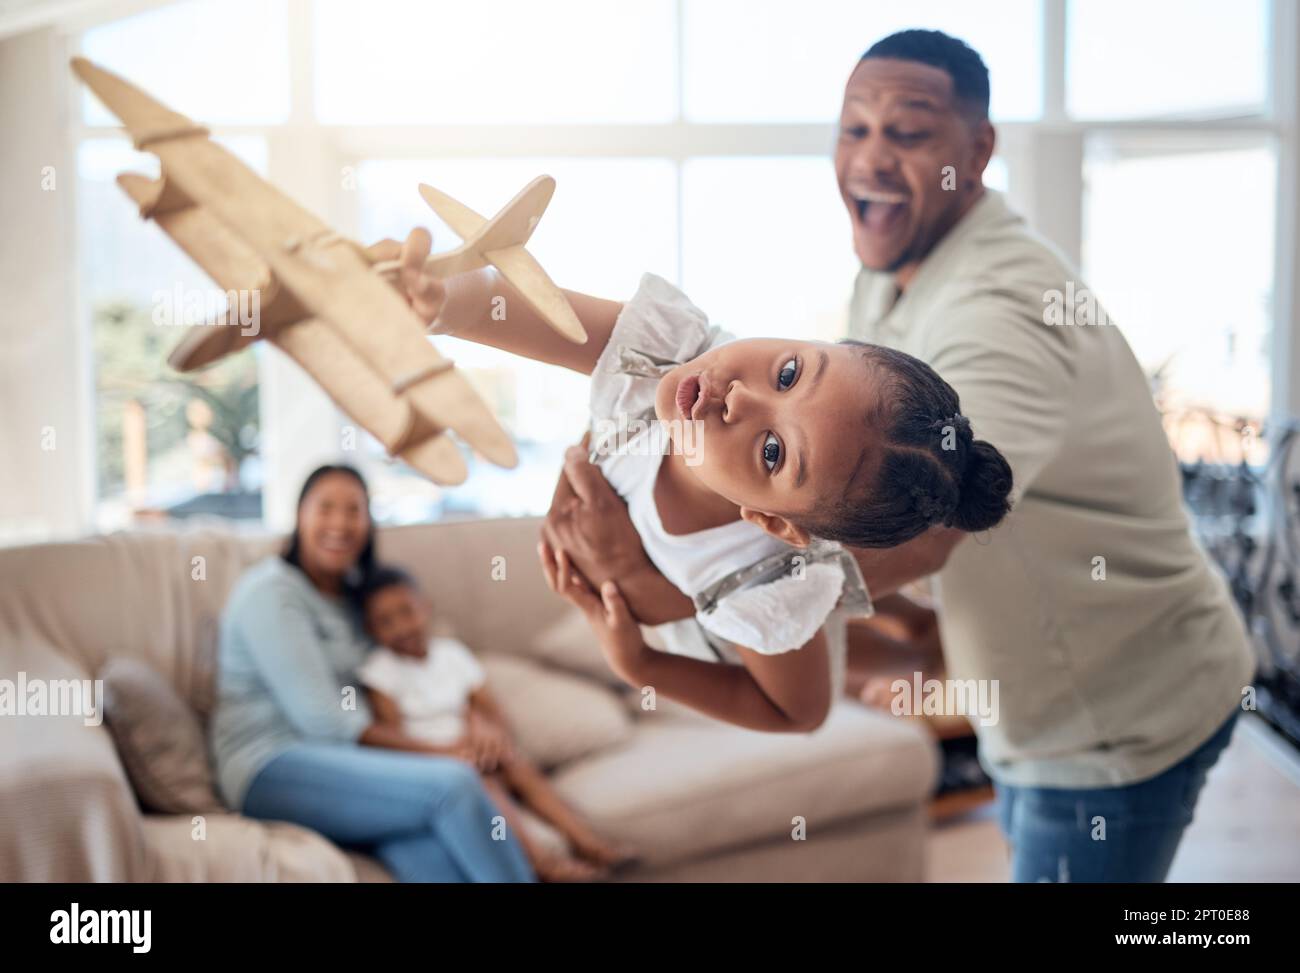 Vater, Mädchen oder spielen mit Spielzeug Flugzeug in der Familie zu Hause oder Haus Wohnzimmer für spannende Spiel, Reise Träume oder Fantasie. Verspieltes Porträt, Flugzeug oder Stockfoto